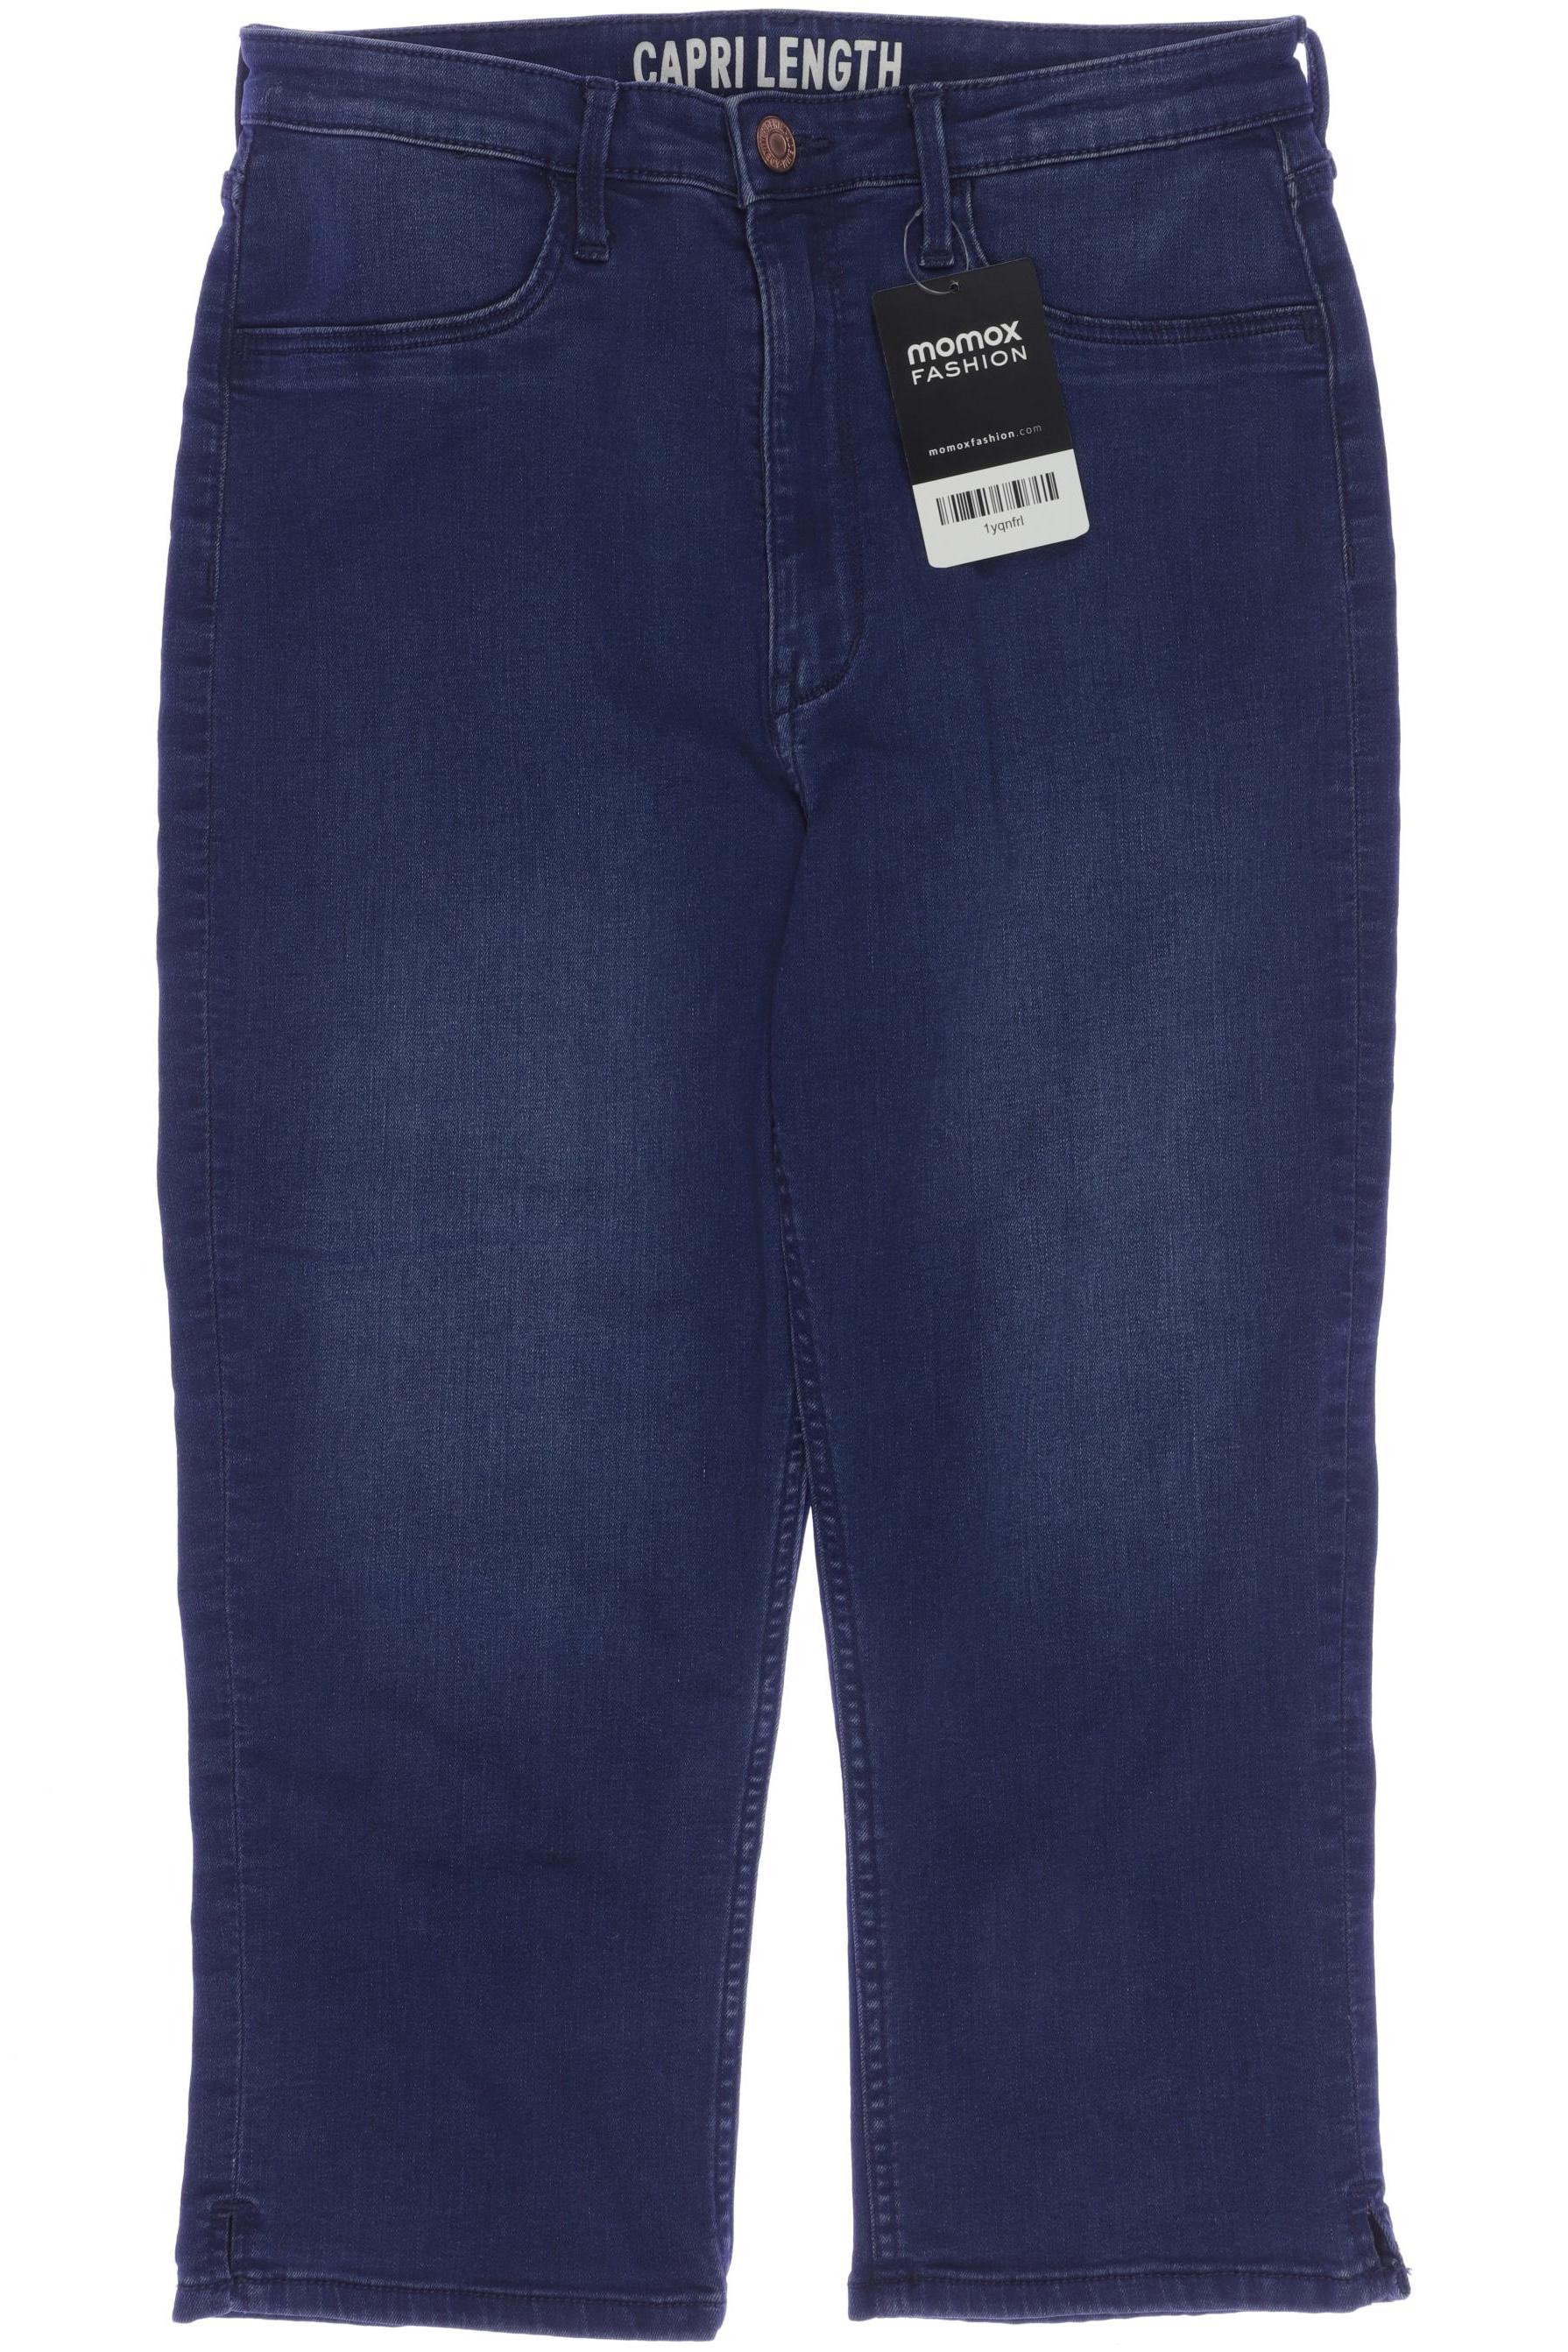 H&M Damen Shorts, blau, Gr. 170 von H&M